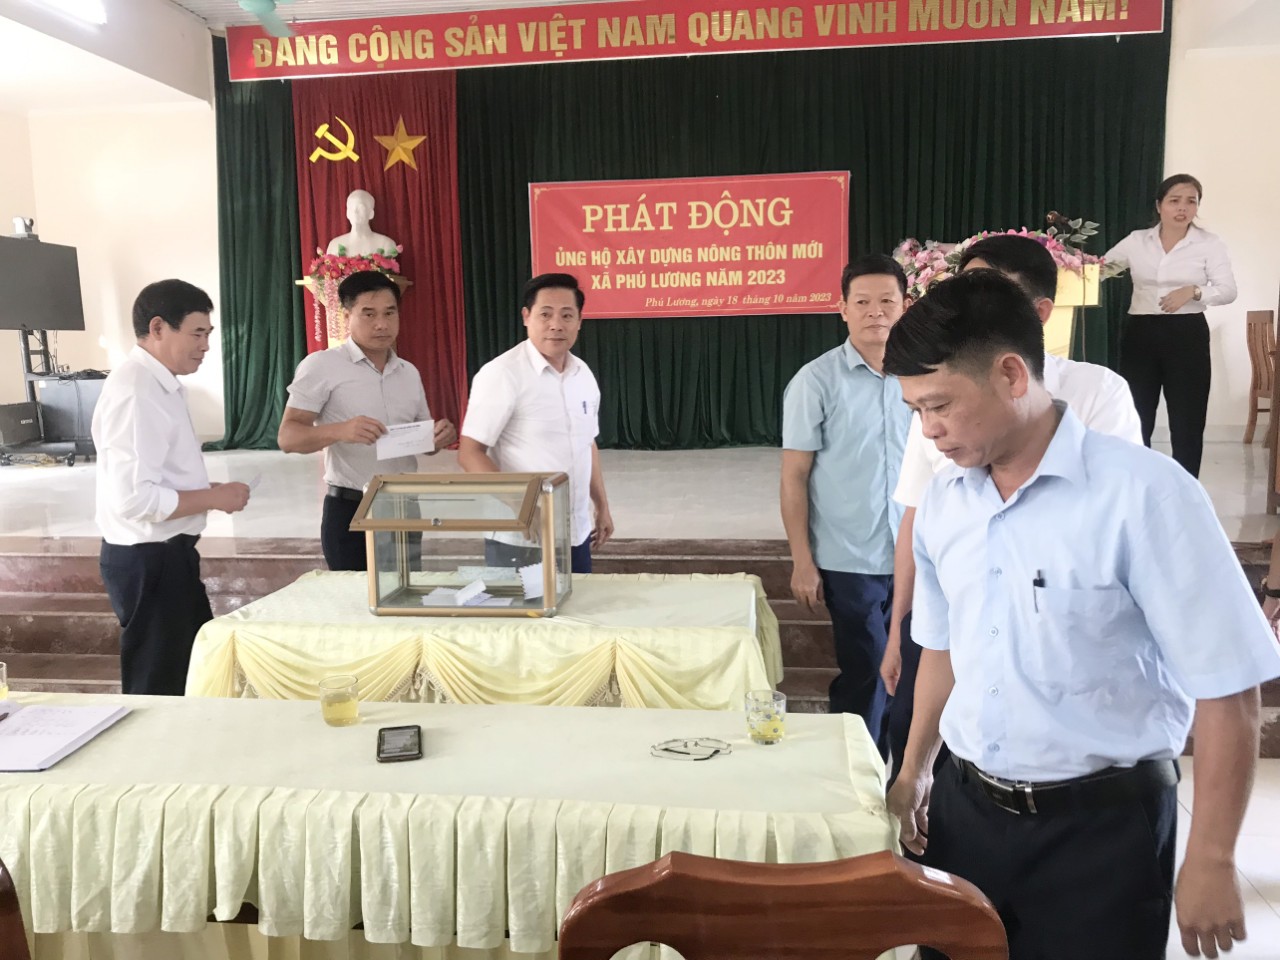 Sơn Dương: Ủy ban MTTQ xã Phú Lương phát động ủng hộ xây dựng nông thôn mới trên địa bàn xã